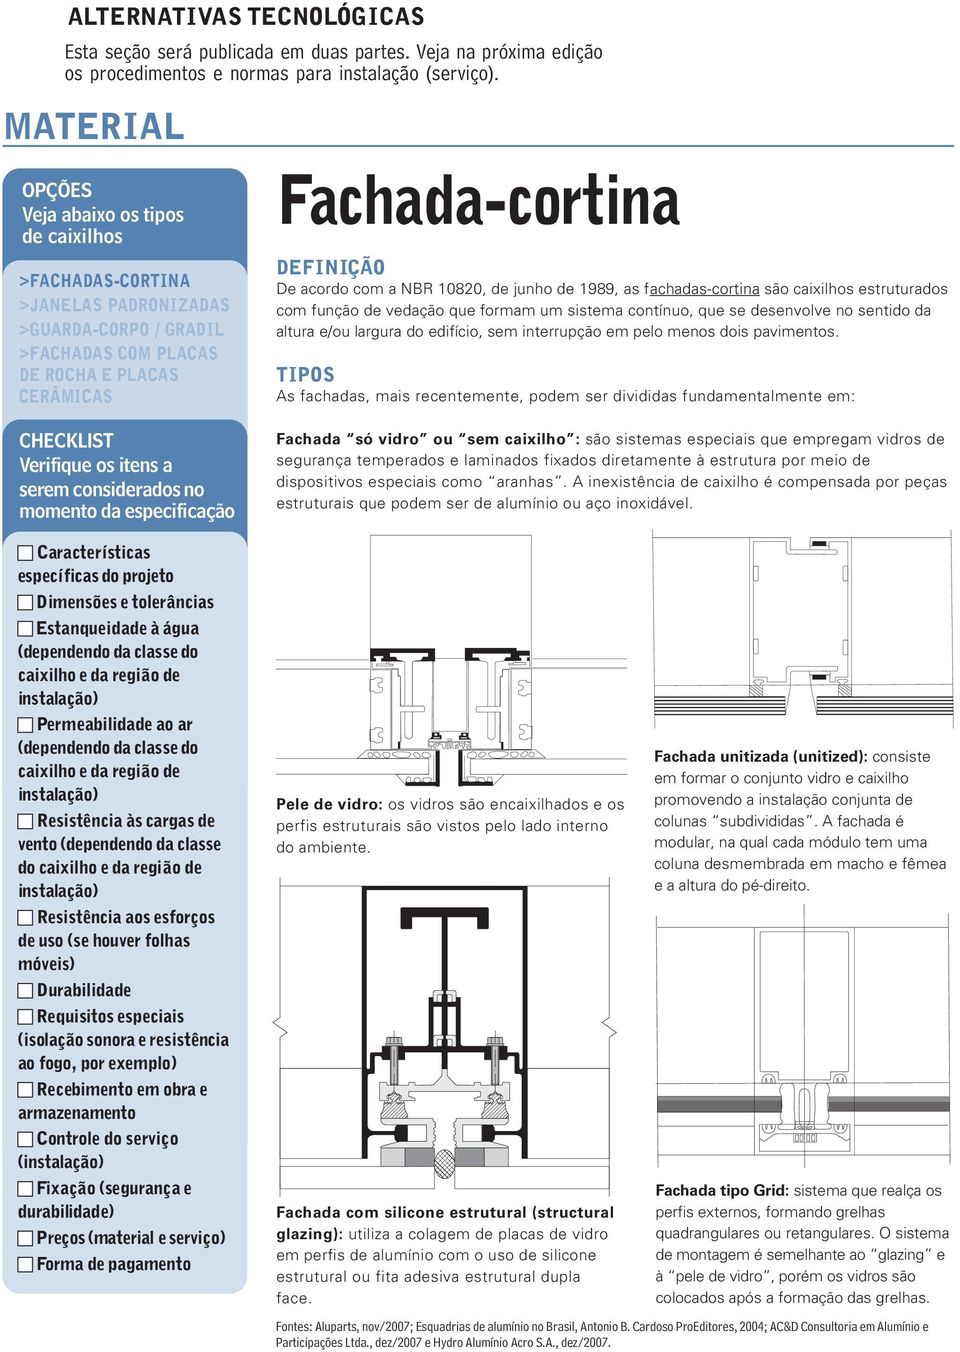 considerados no momento da especificação Fachada-cortina DEFINIÇÃO De acordo com a NBR 10820, de junho de 1989, as fachadas-cortina são caixilhos estruturados com função de vedação que formam um